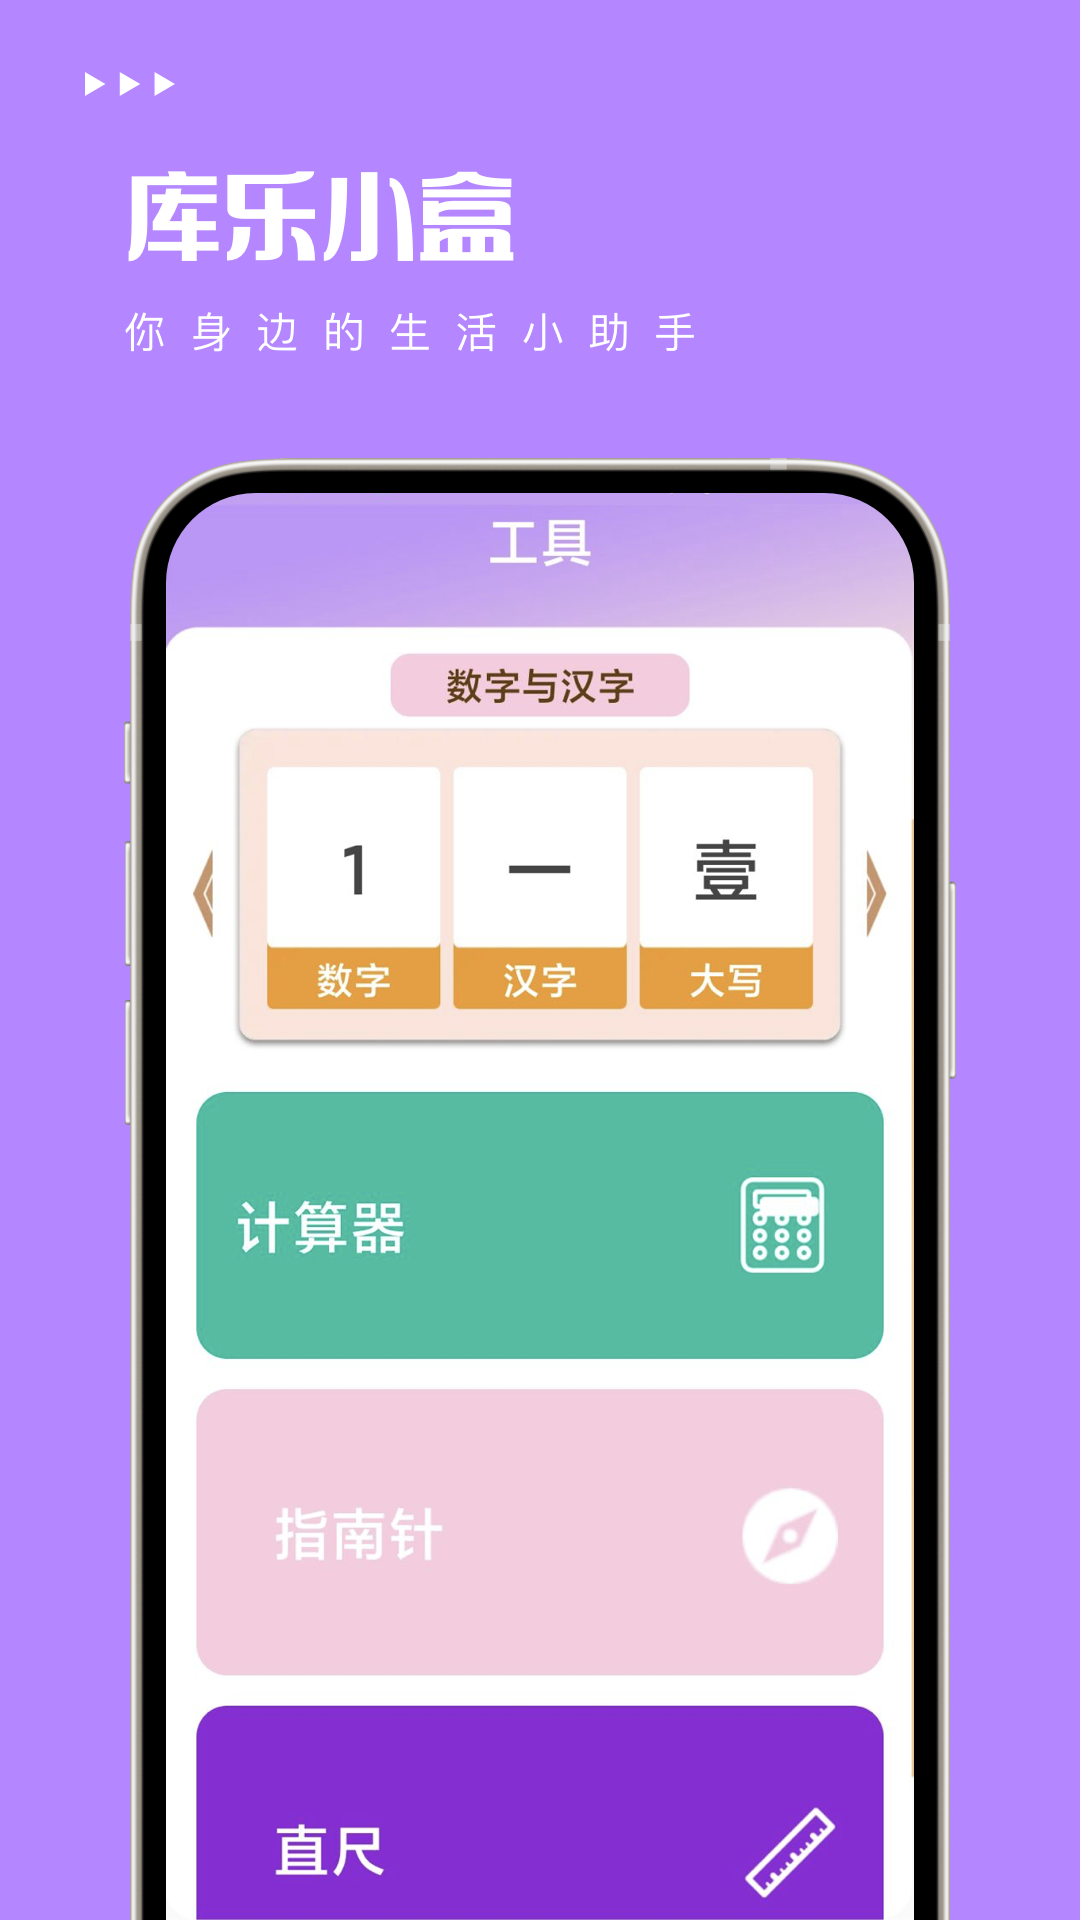 库乐小盒工具箱app官方版4